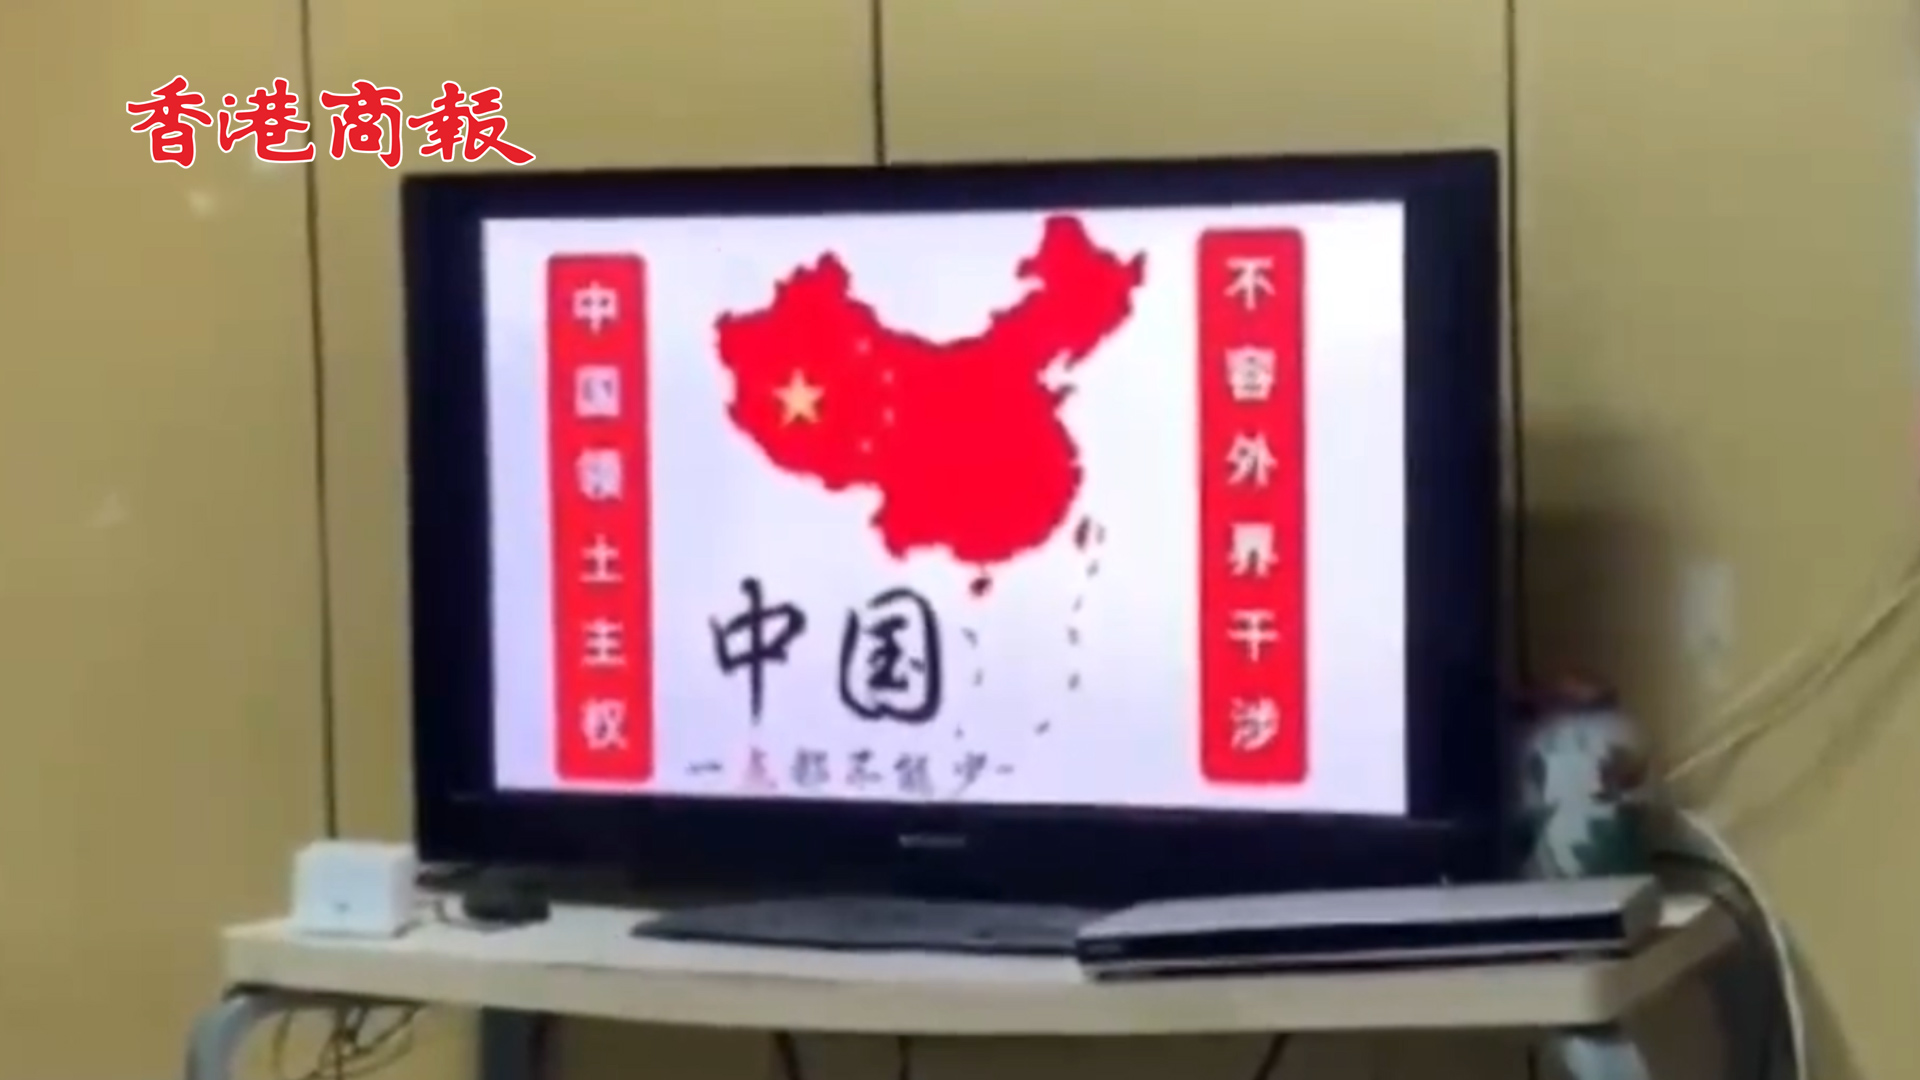 有片丨台灣綠媒新聞直播信號被黑客攻擊 滾動播放「中國一點都不能少」